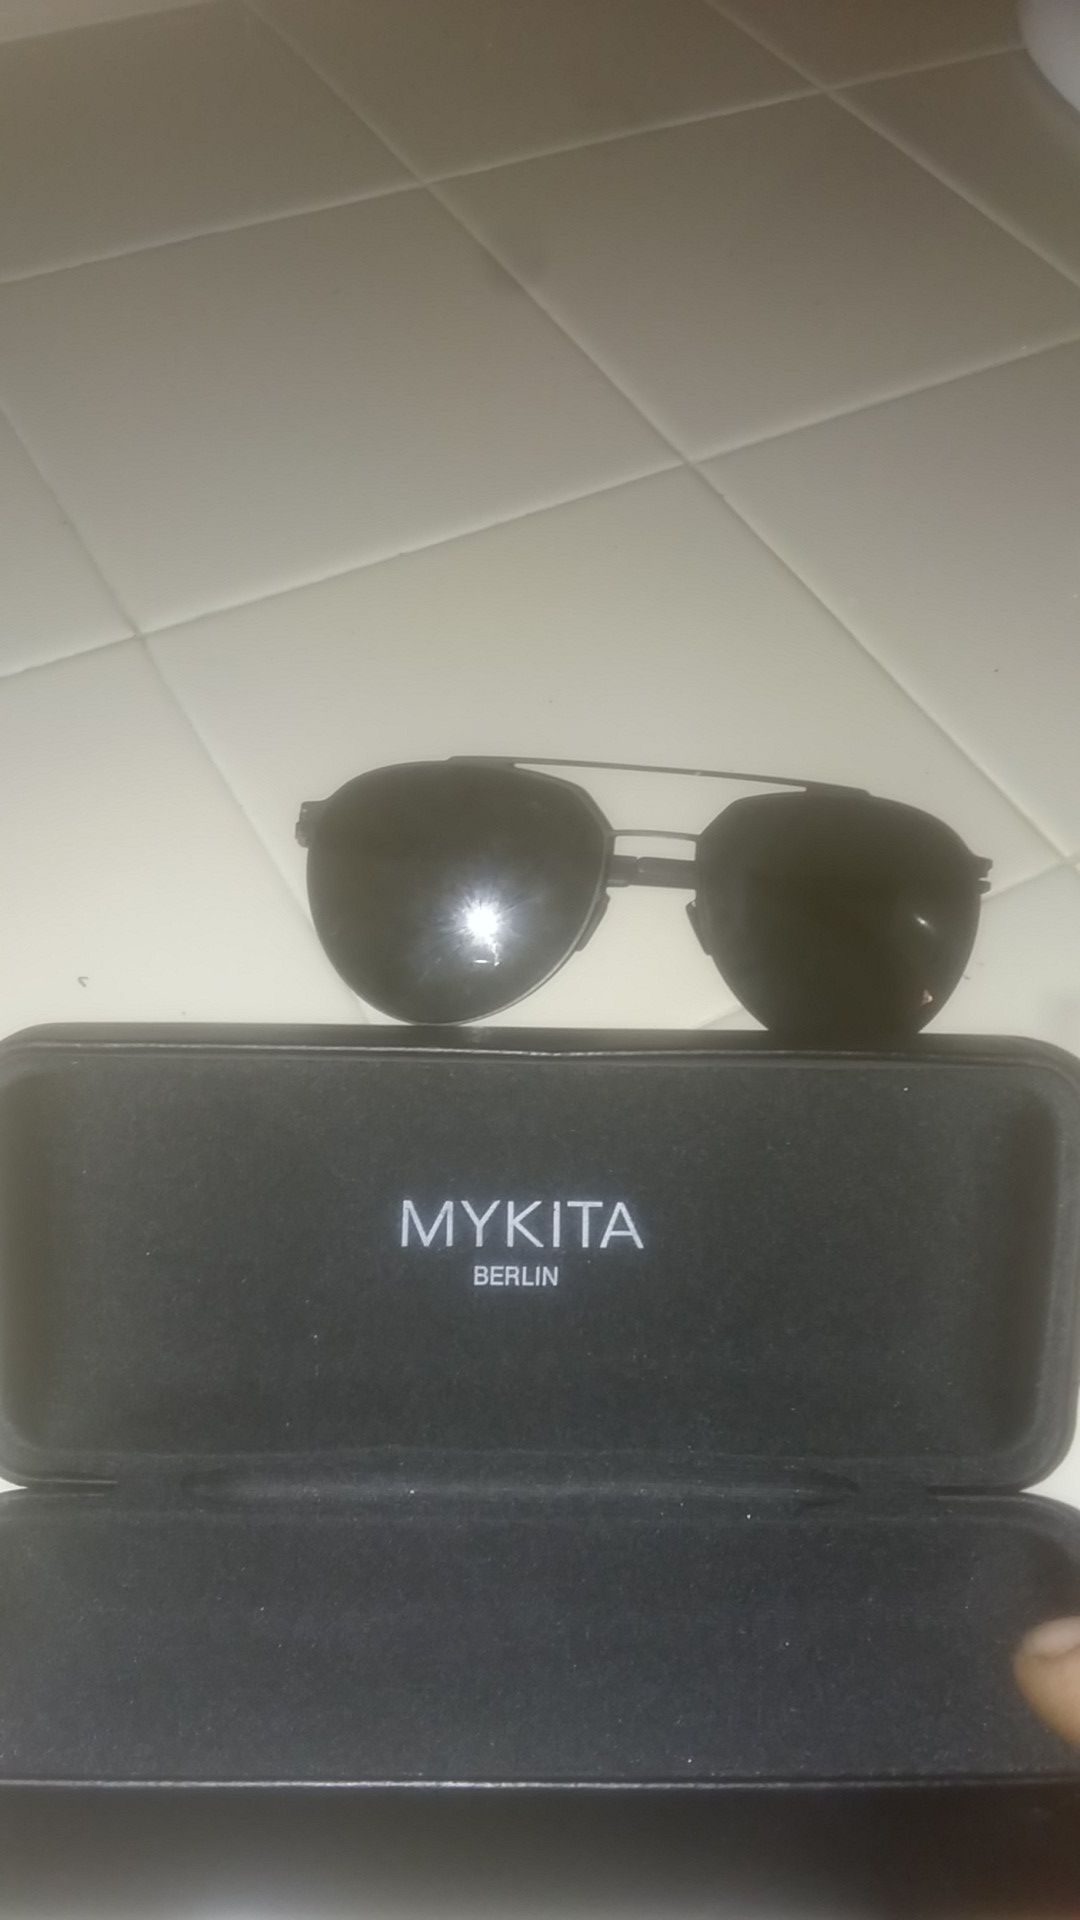 Mykita glasses